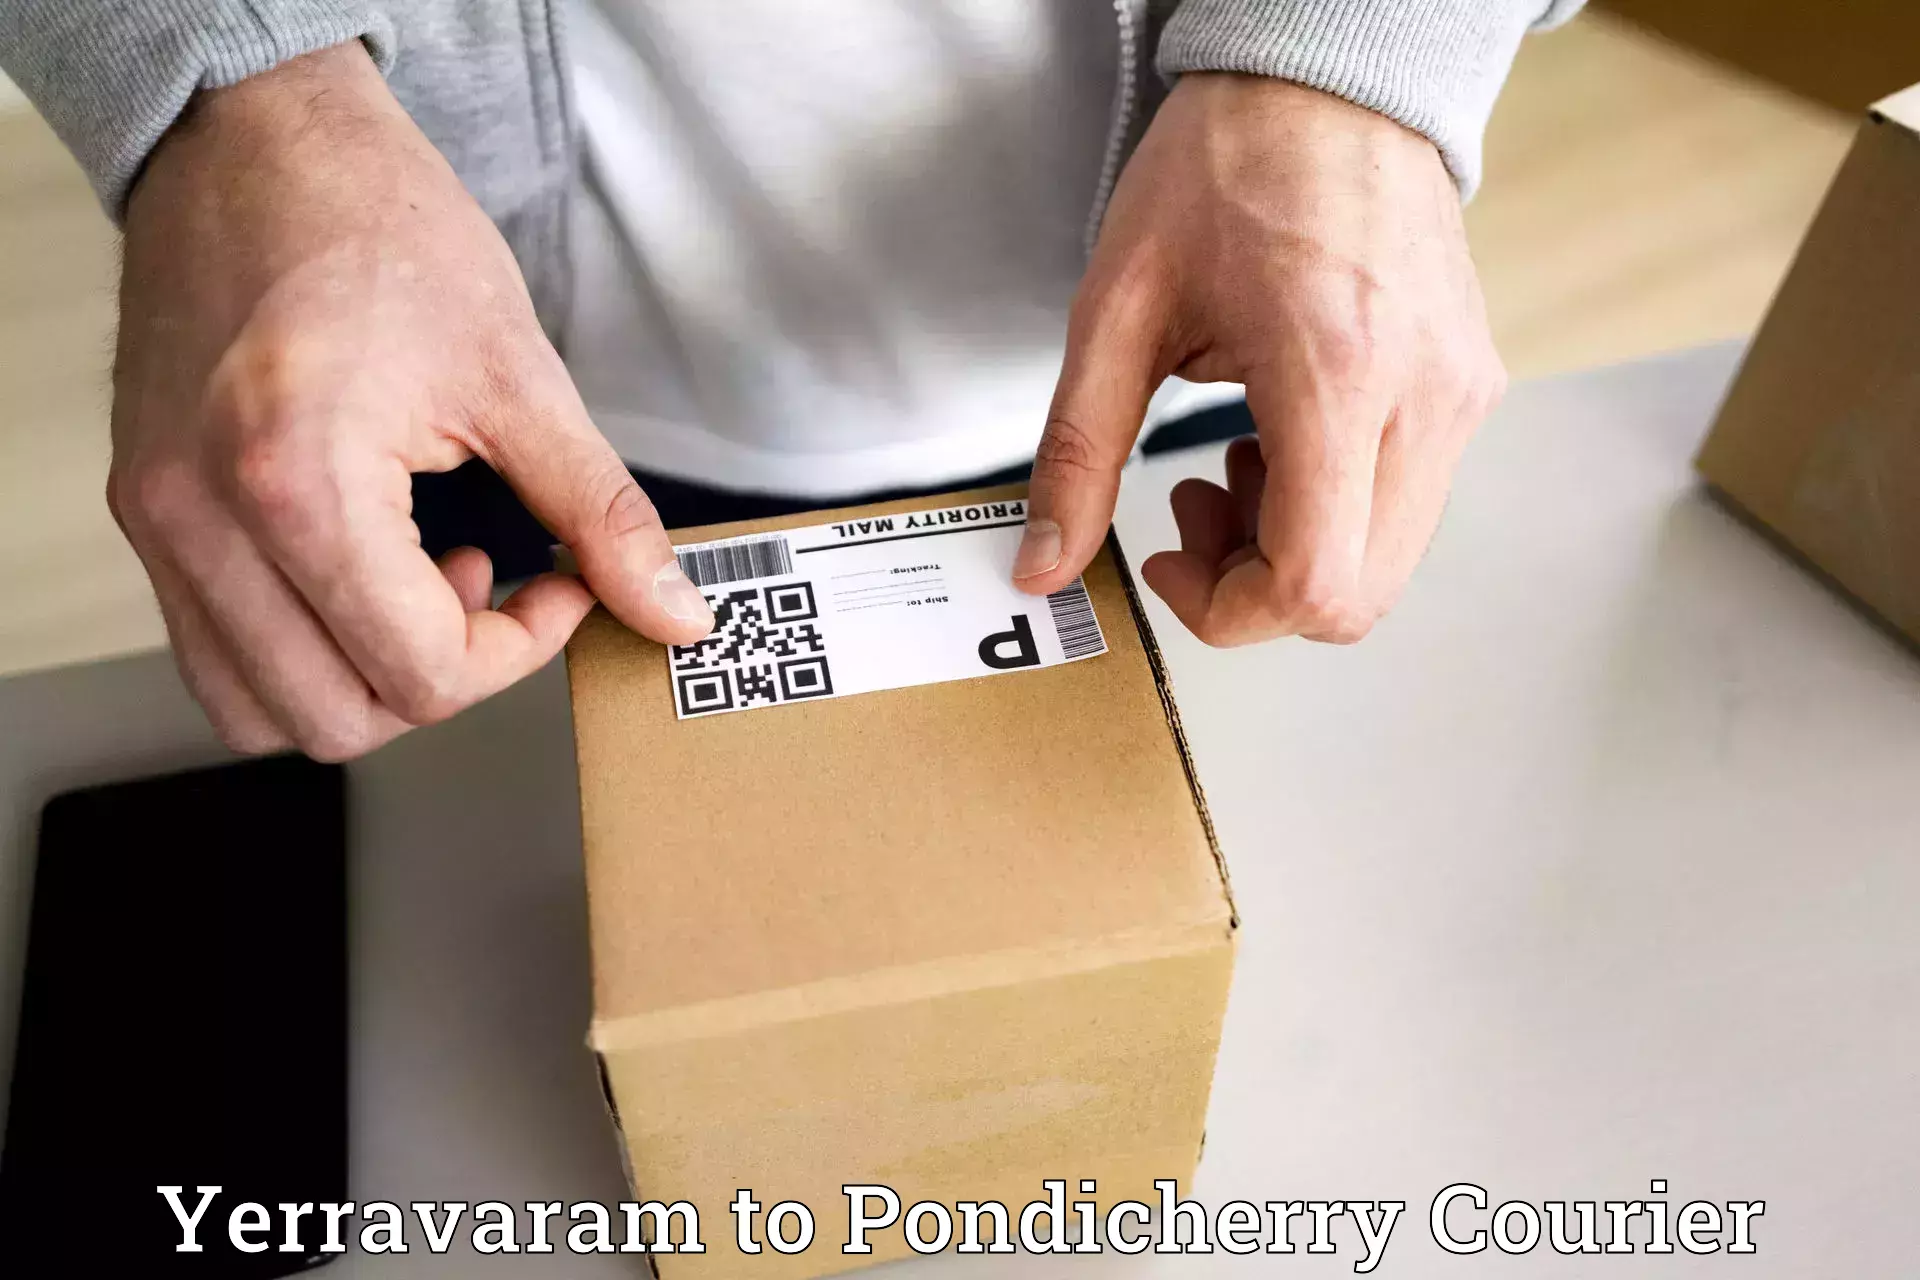 Professional courier handling Yerravaram to Metttupalayam